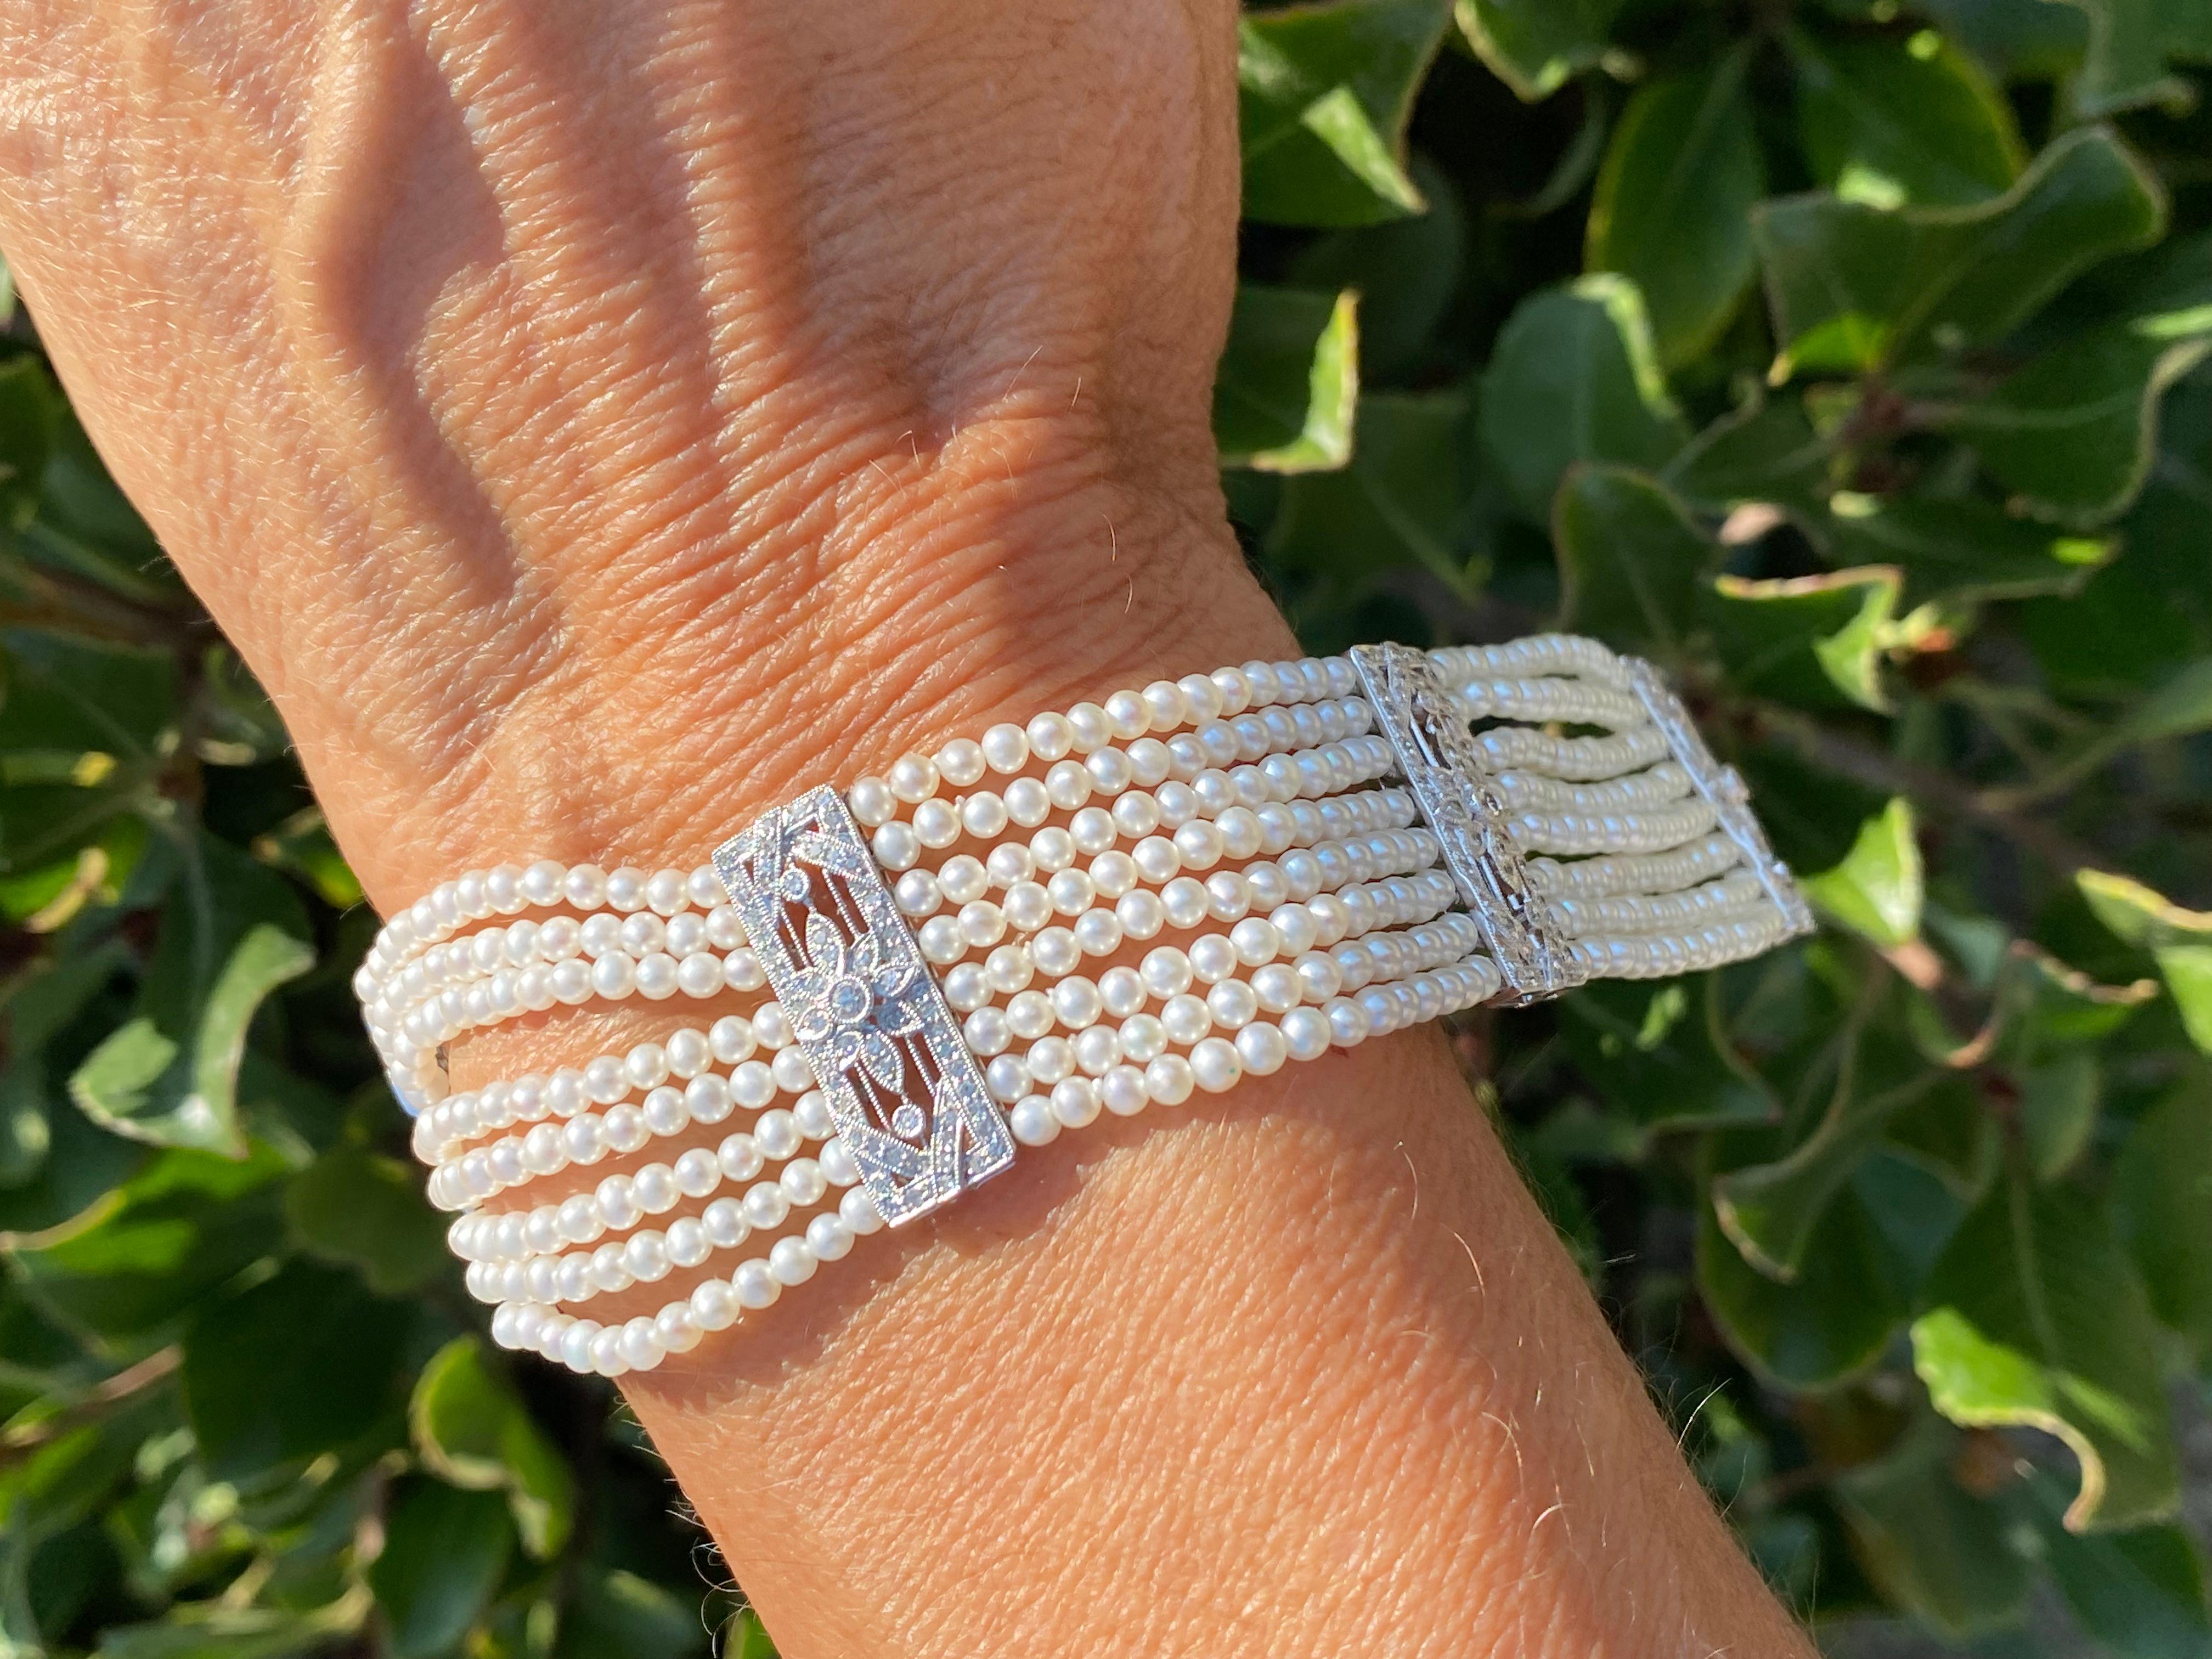 bracelet de perles et de diamants à 8 brins

Ce spectaculaire bracelet de perles en platine et diamants est réalisé avec les plus belles perles et diamants AAA

Huit rangs de perles parfaitement assorties mesurent 2,5 mm chacun et sont attachés par